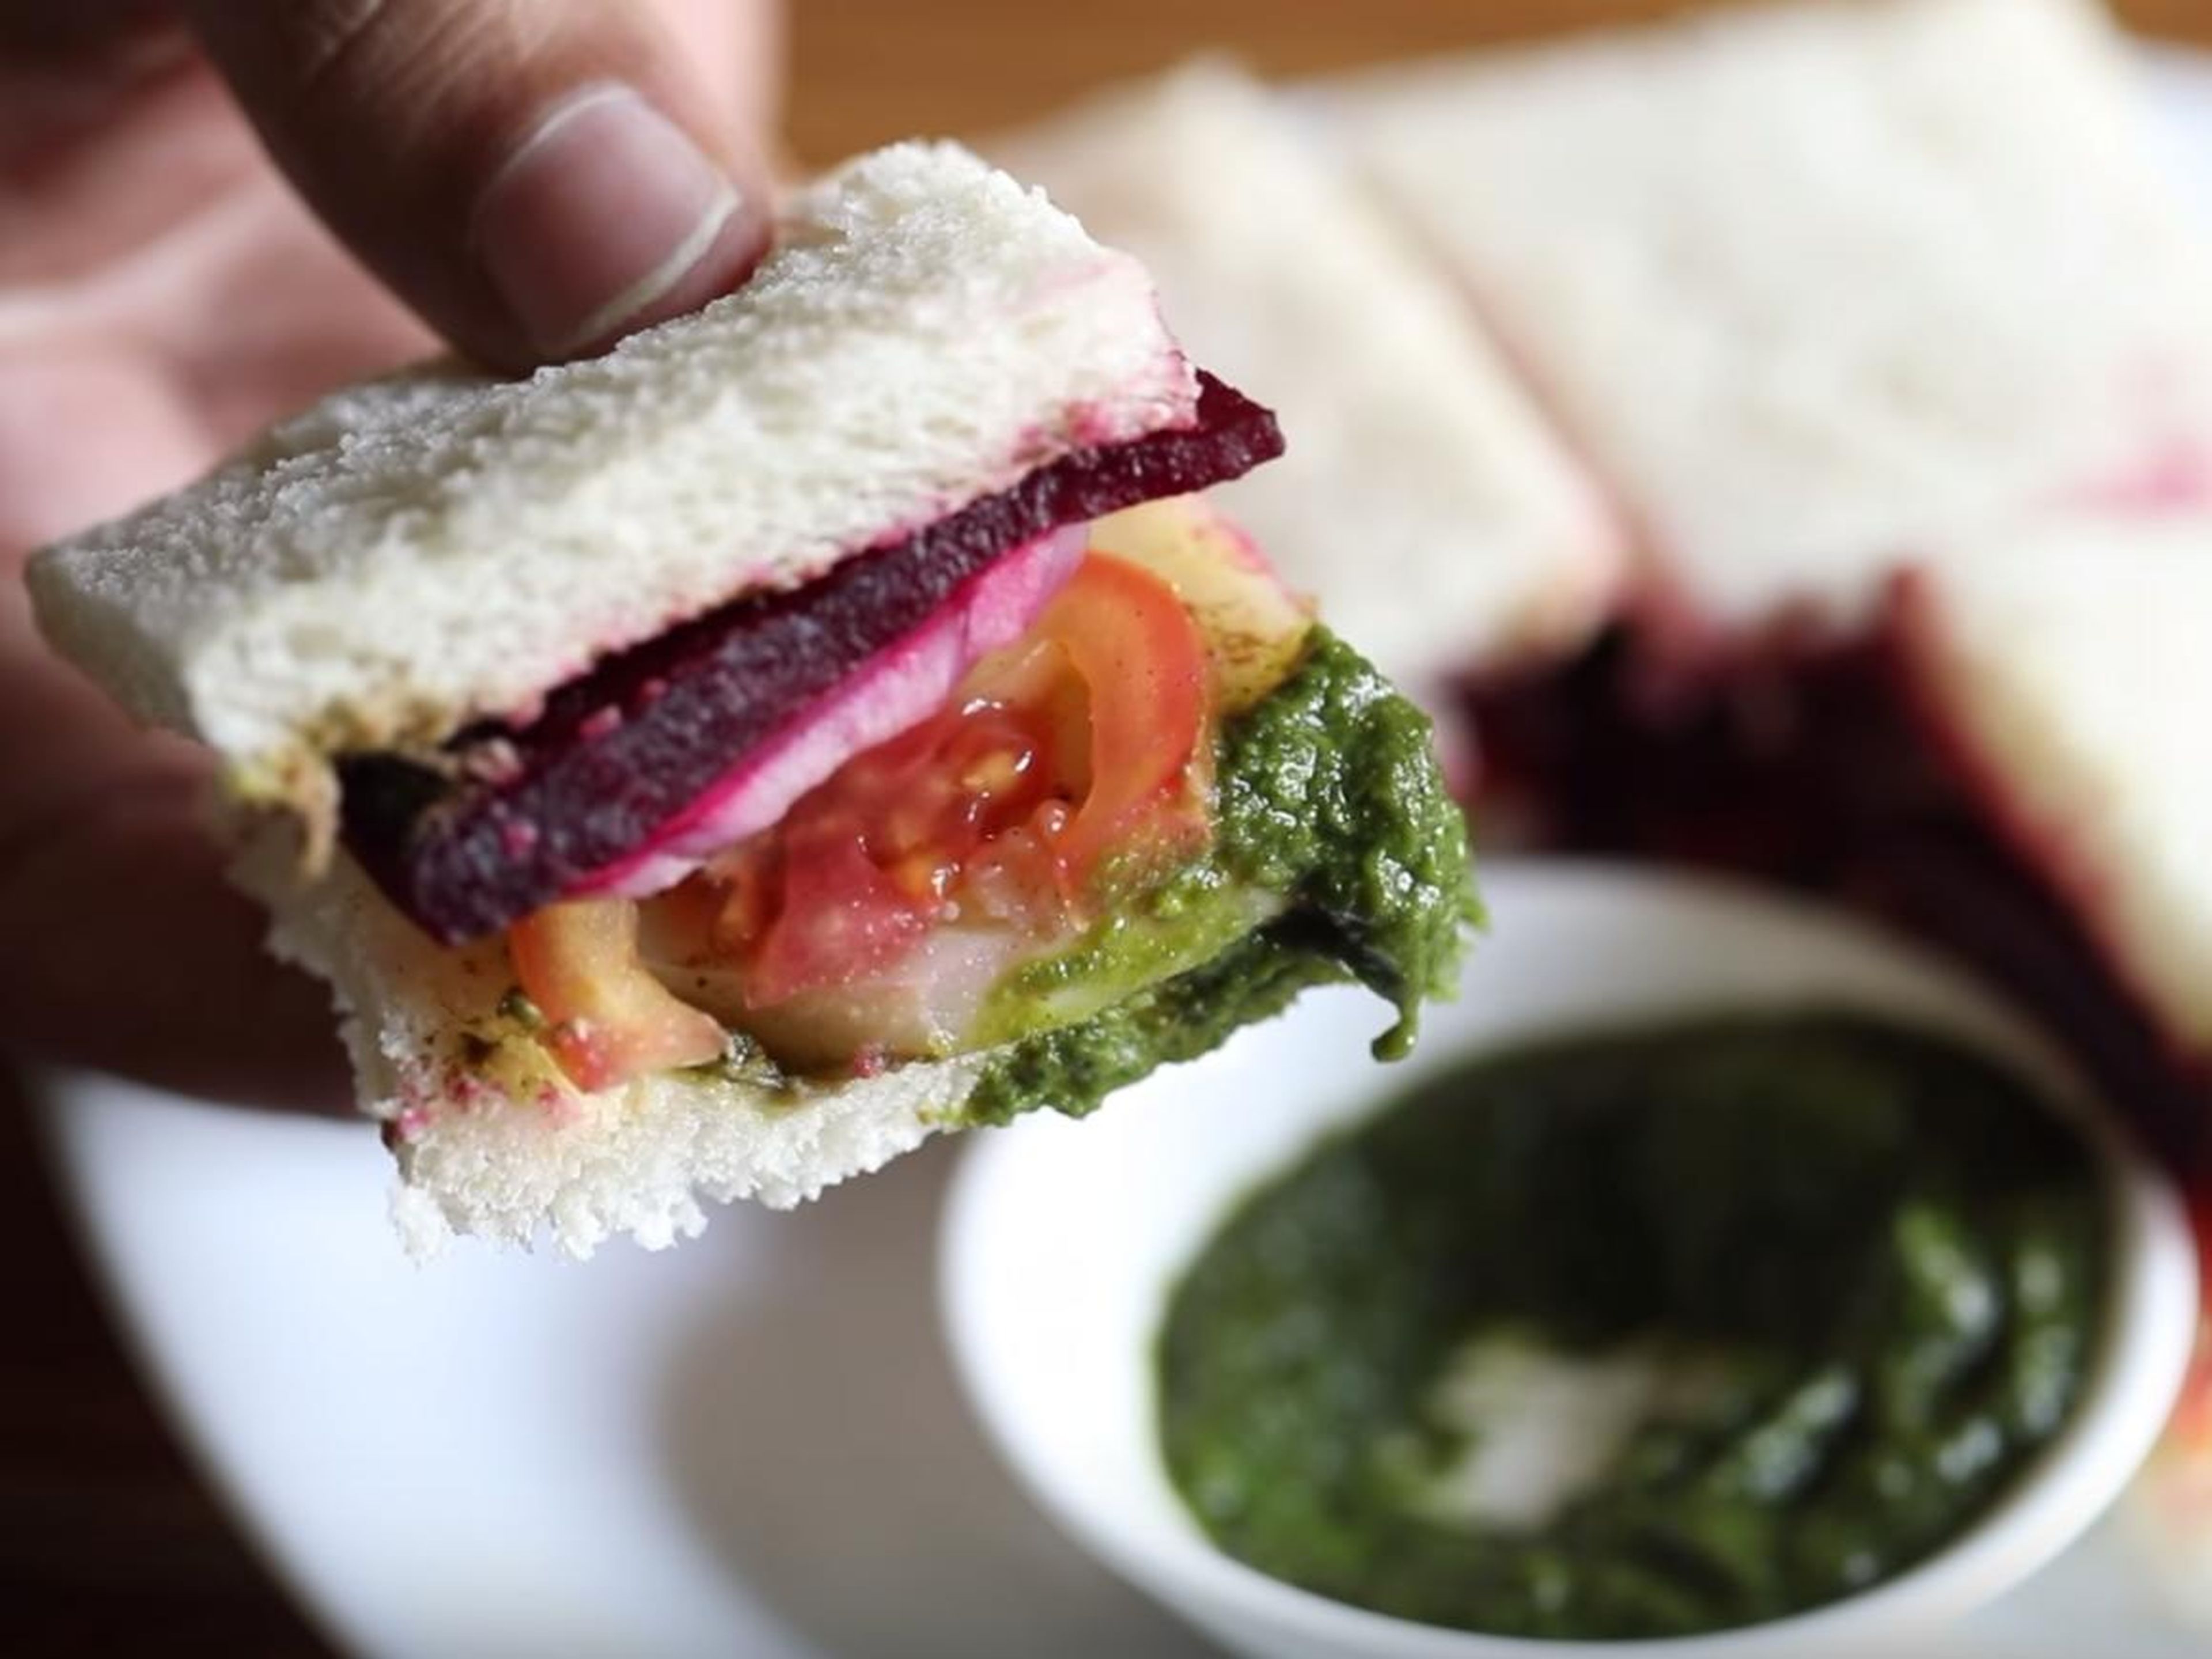 Puedes ver las distintas capas del sándwich de Bombay aquí.